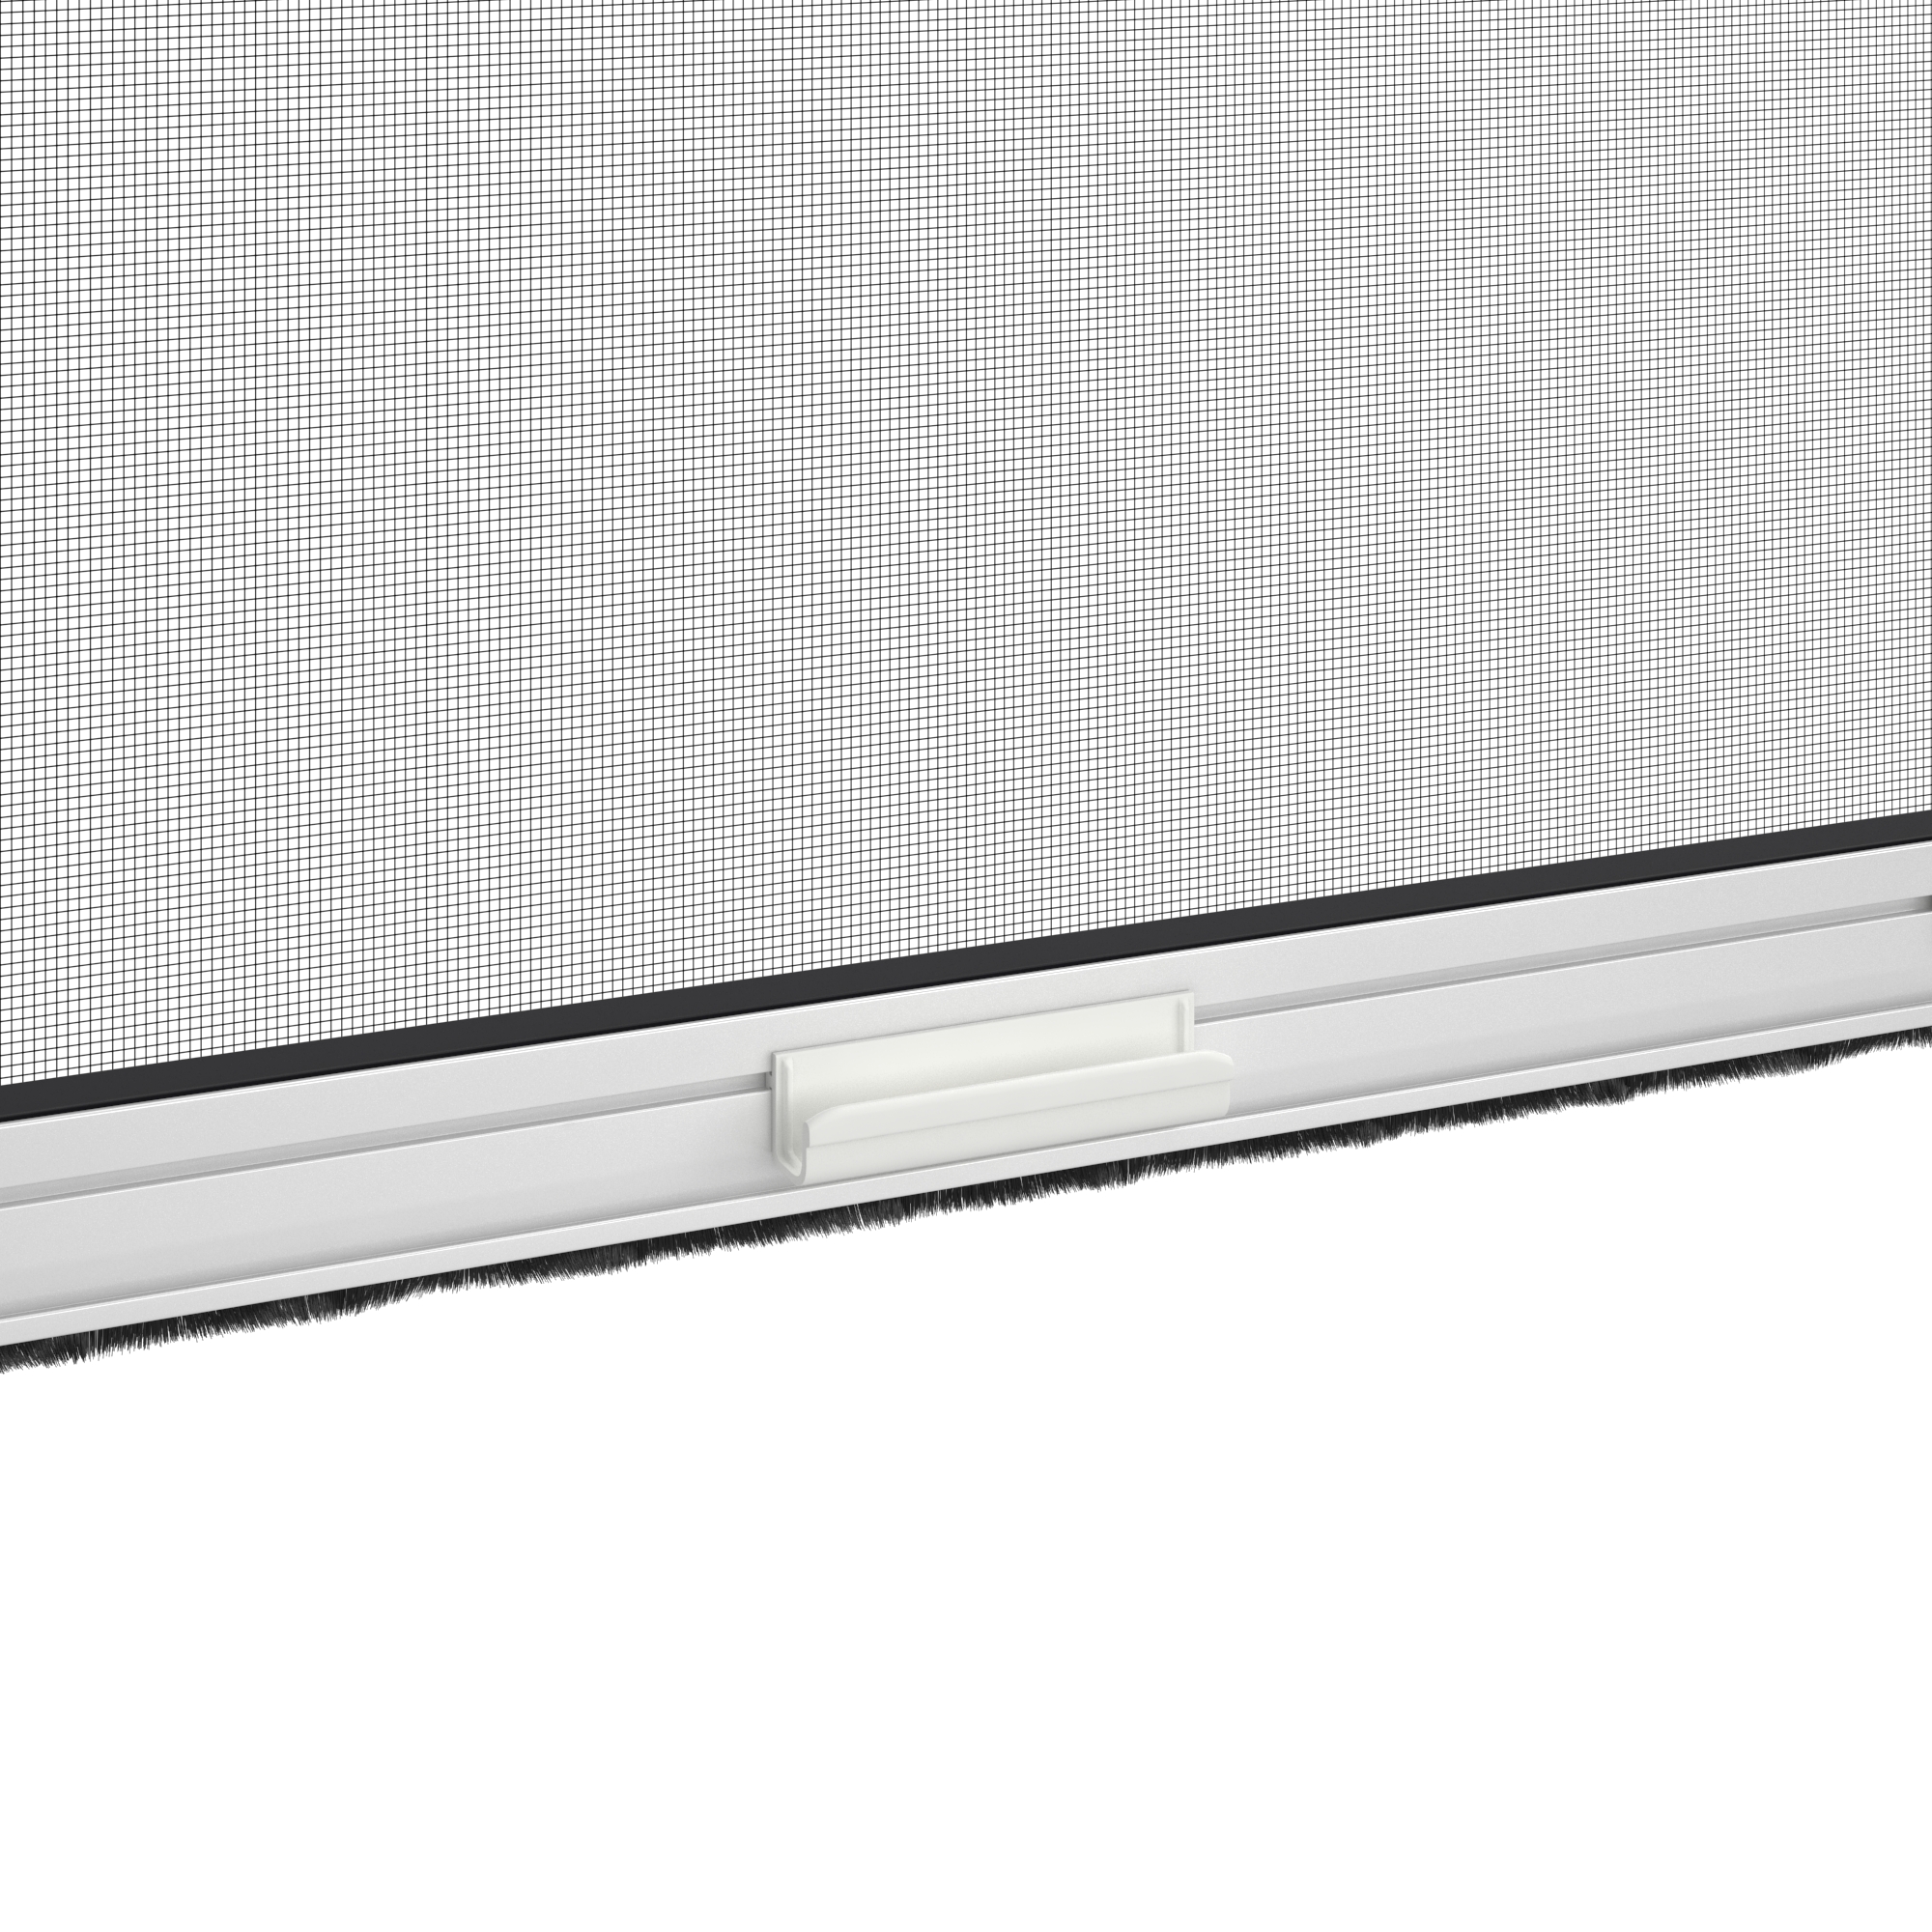 Zanzariera avvolgibile ARTENS per finestra L 100 x H 160 cm bianco - 6